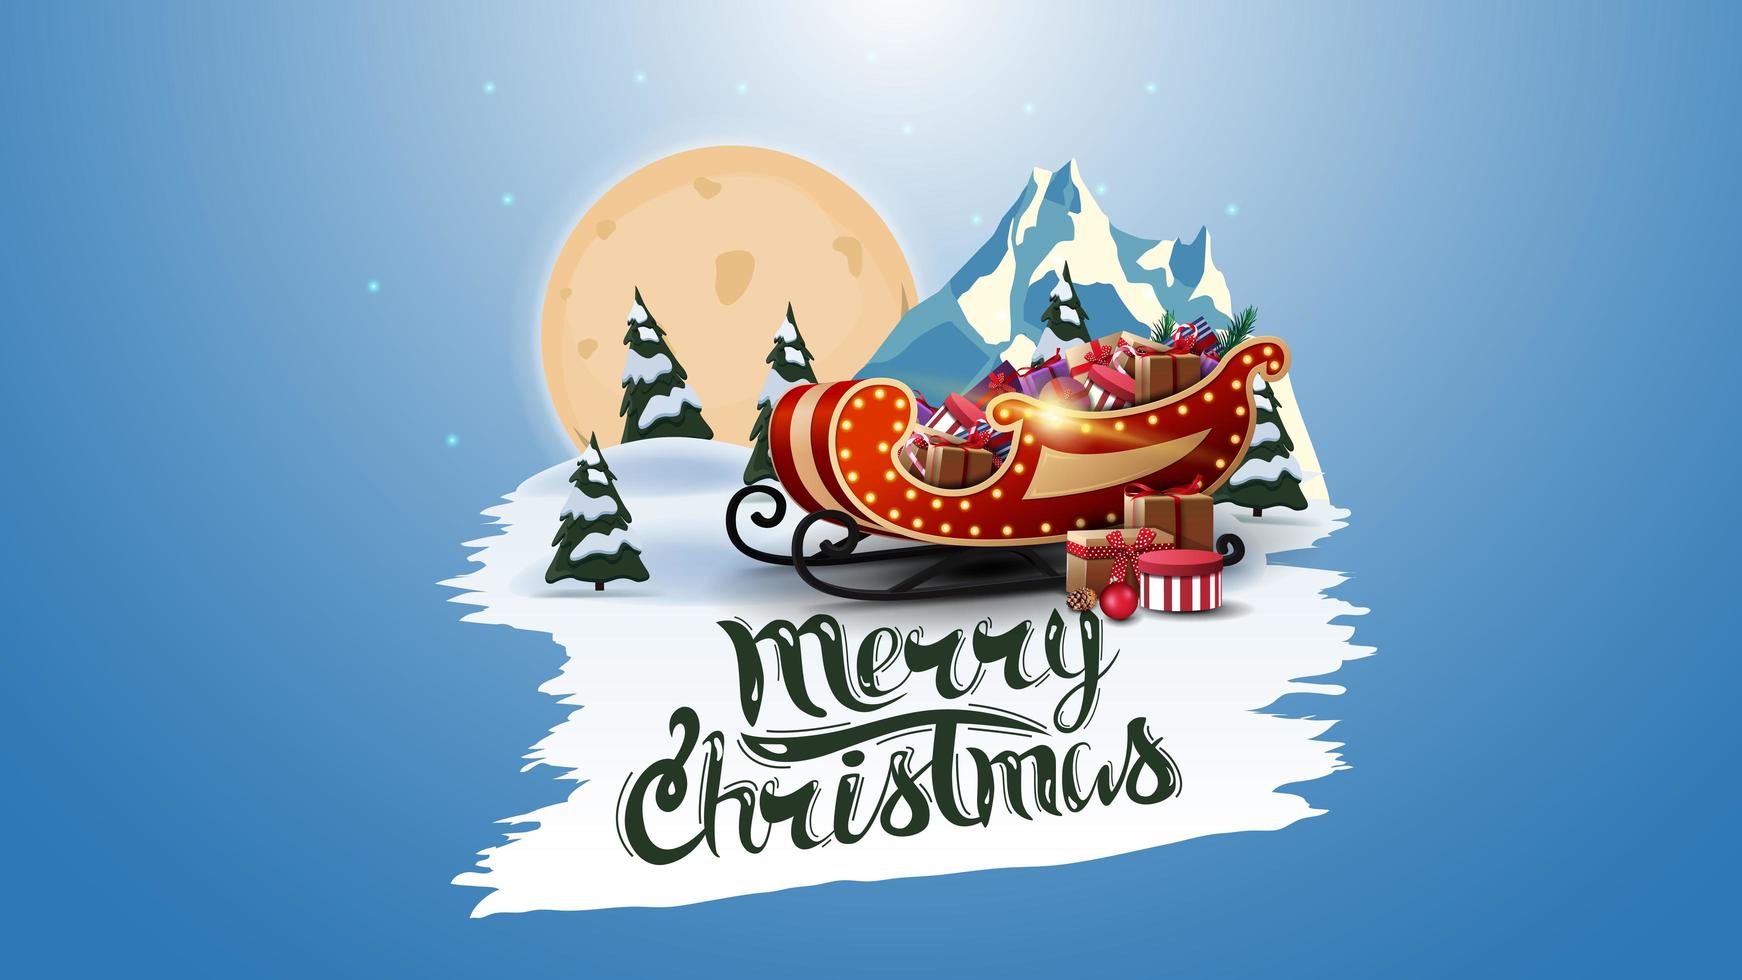 mmerry christmas, ansichtkaart met grote volle maan, dennenbos, berg en santa slee met cadeautjes. wit gescheurde banner vector